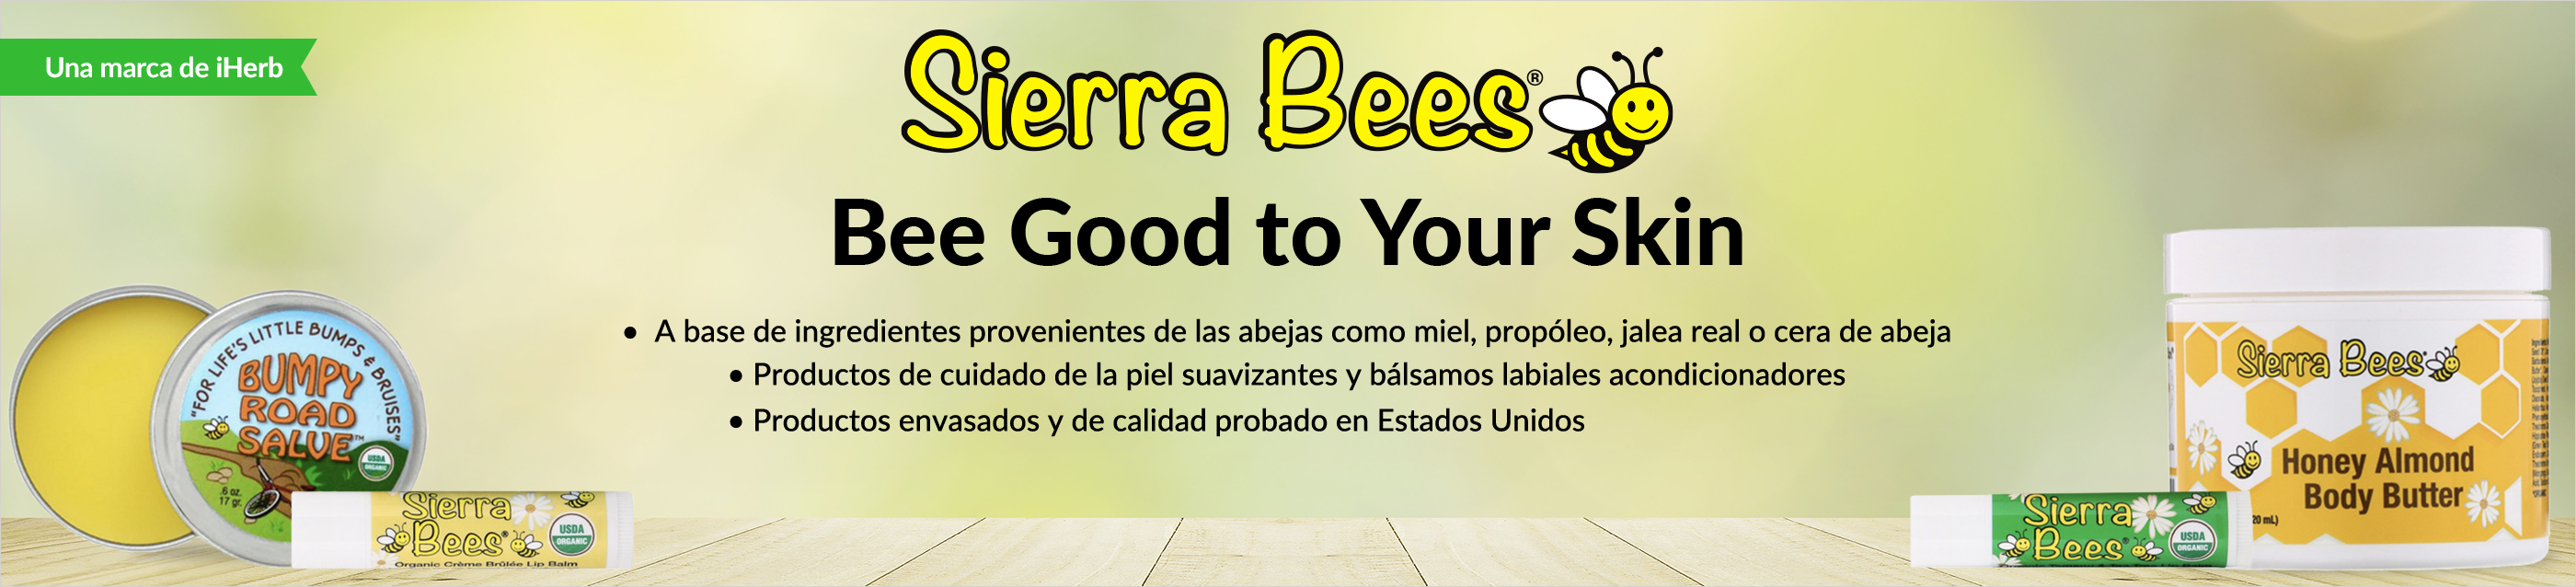 Sierra Bees